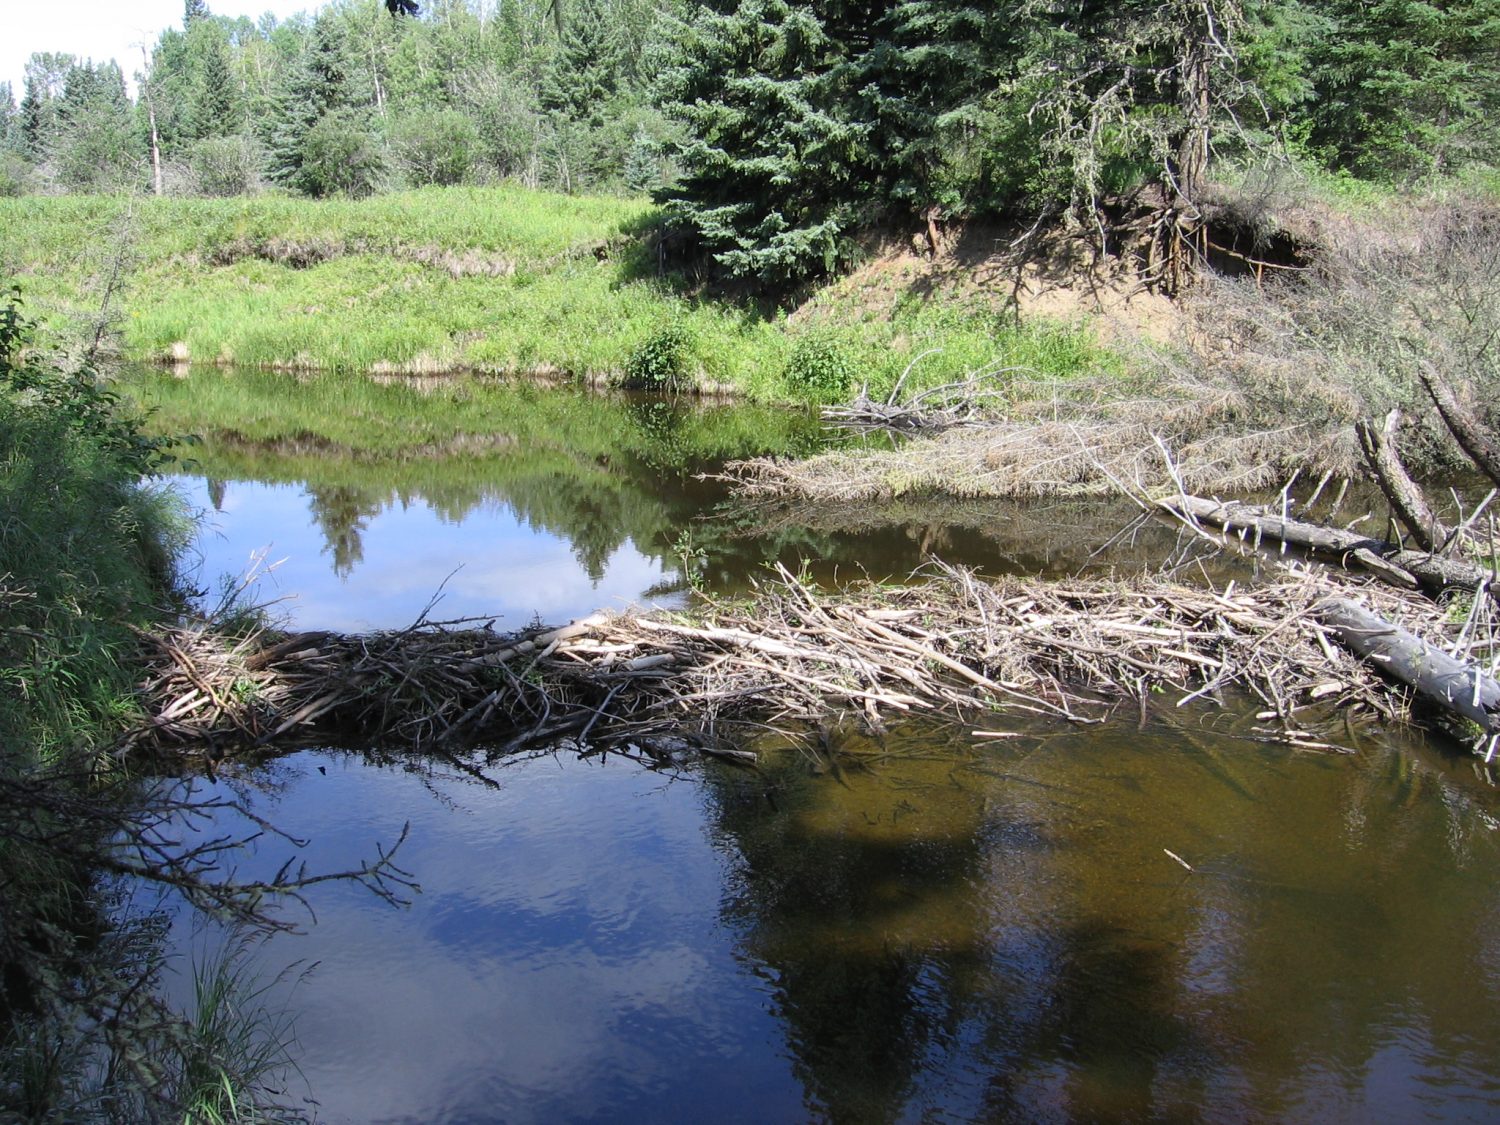 A beaver dam